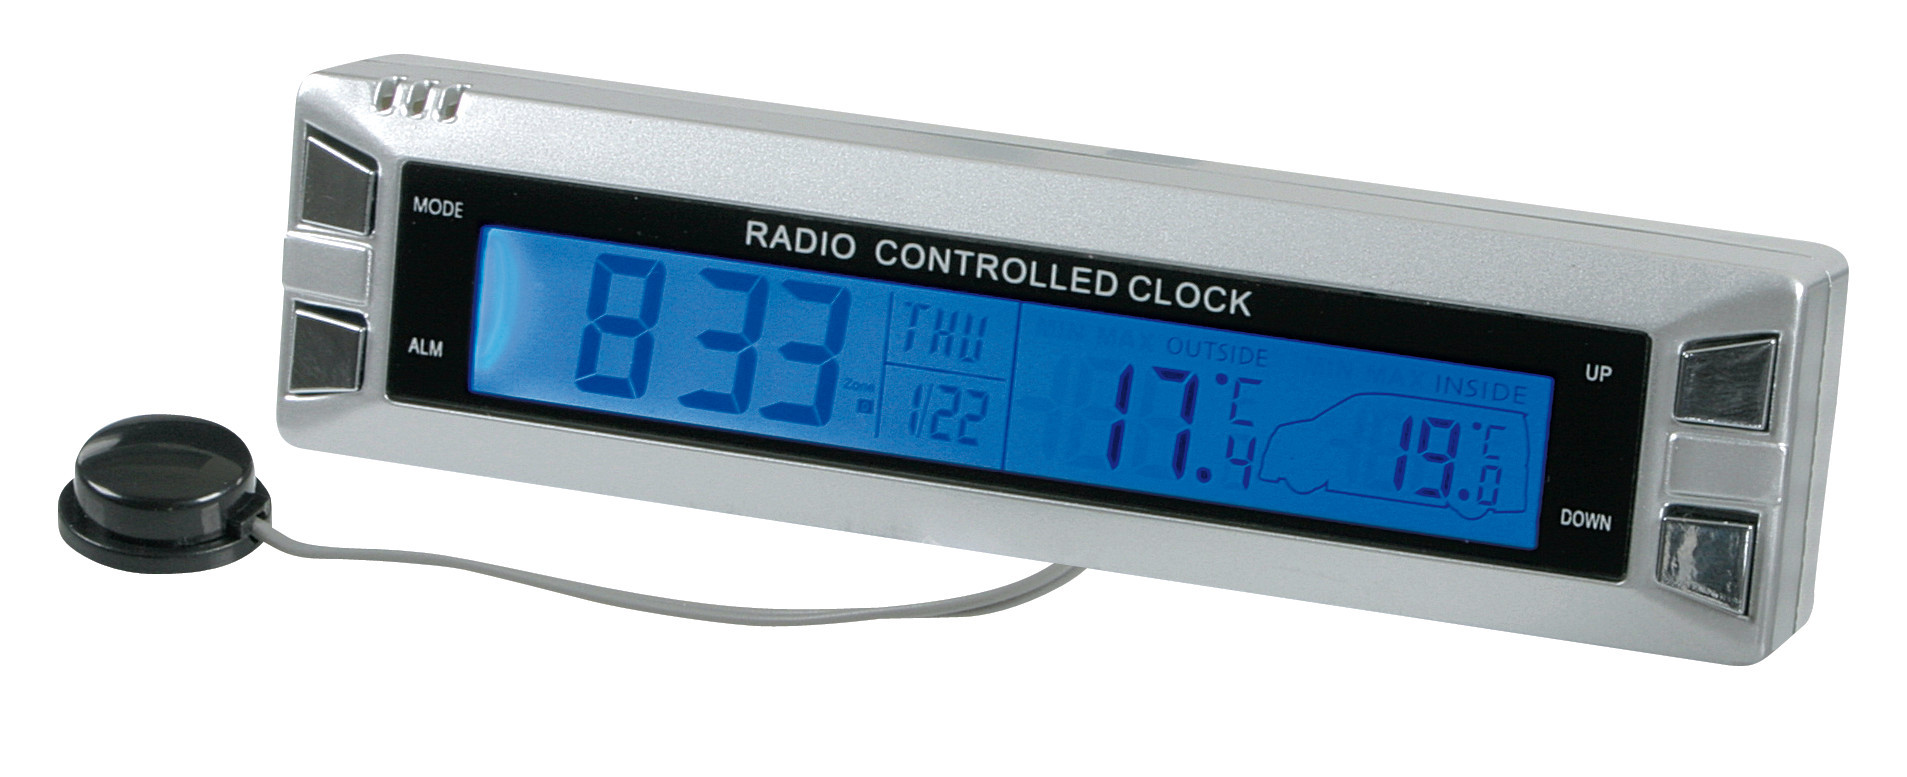 Seyio R-30 külső -belső hőmérő, óra , rádió kontroll 12/24V thumb